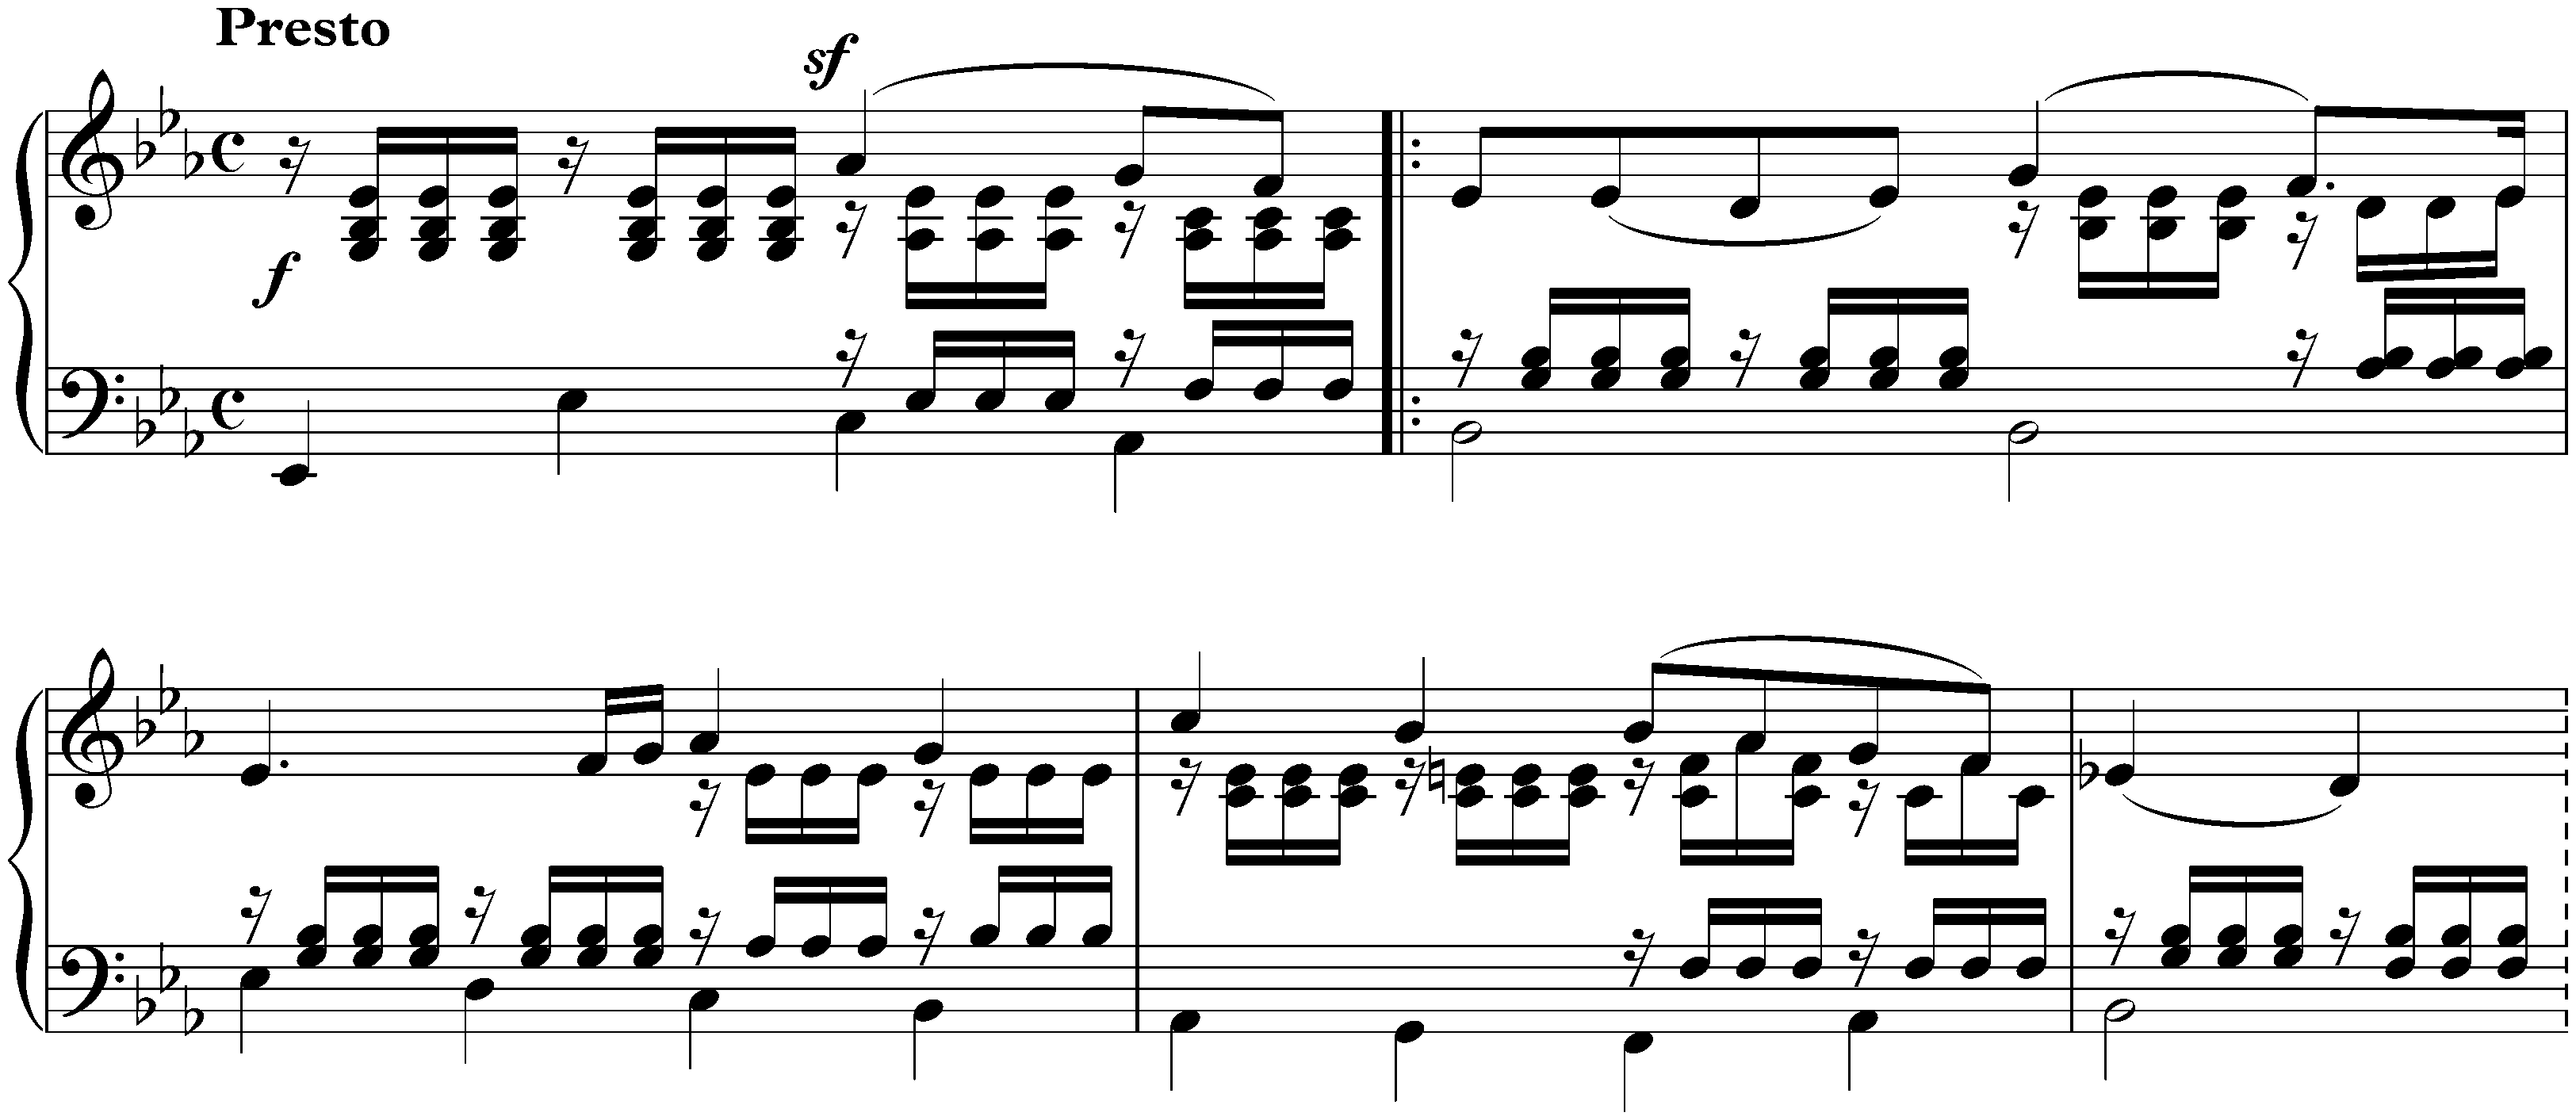 Lieder ohne Worte, Book 7, op. 85; 3. E-flat major